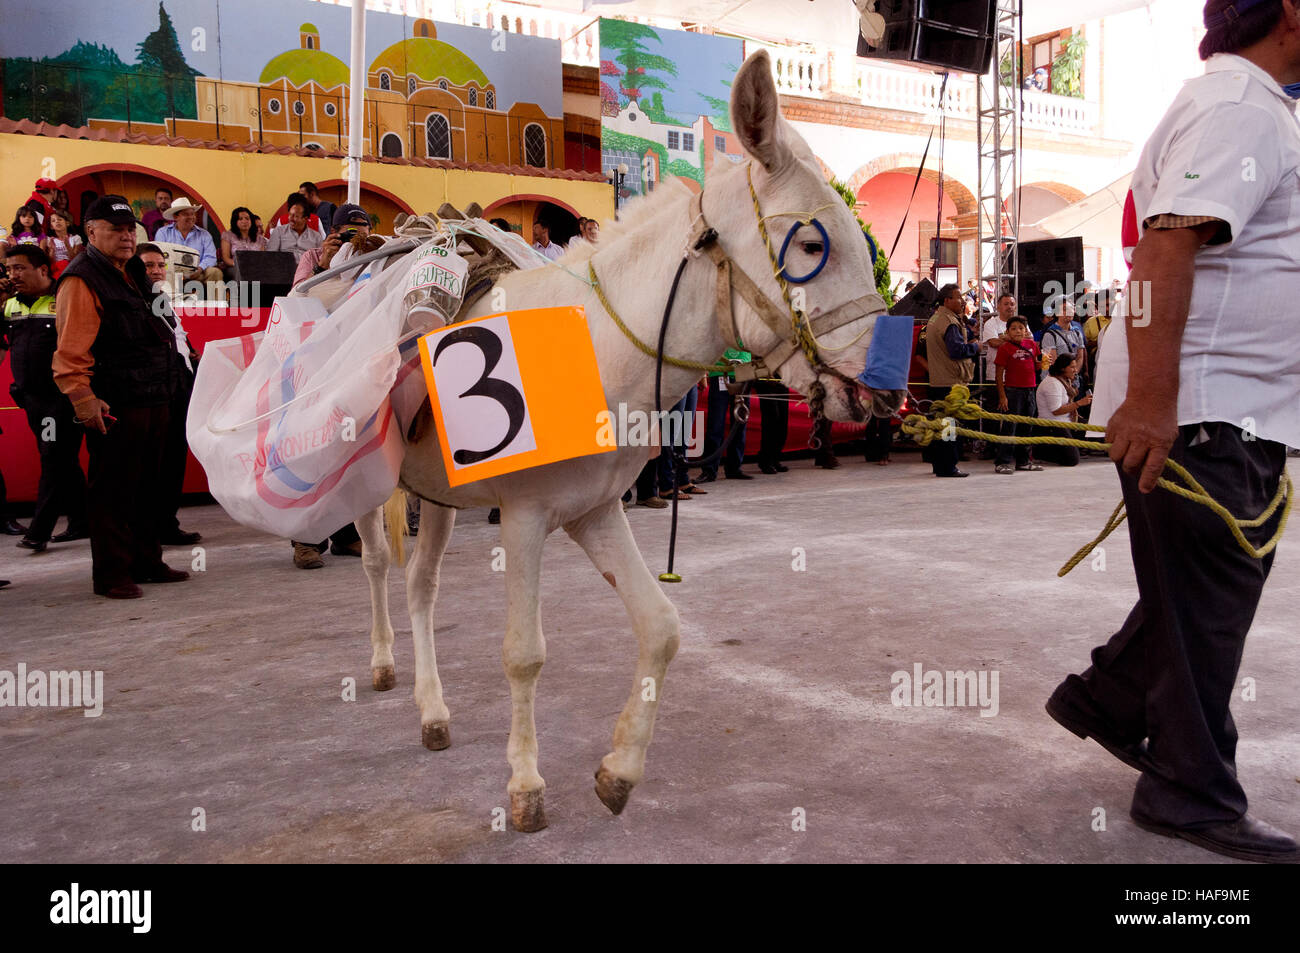 Concours au cours de l'âne vêtu juste d'Âne (Feria del burro) à Otumba, Mexique Banque D'Images